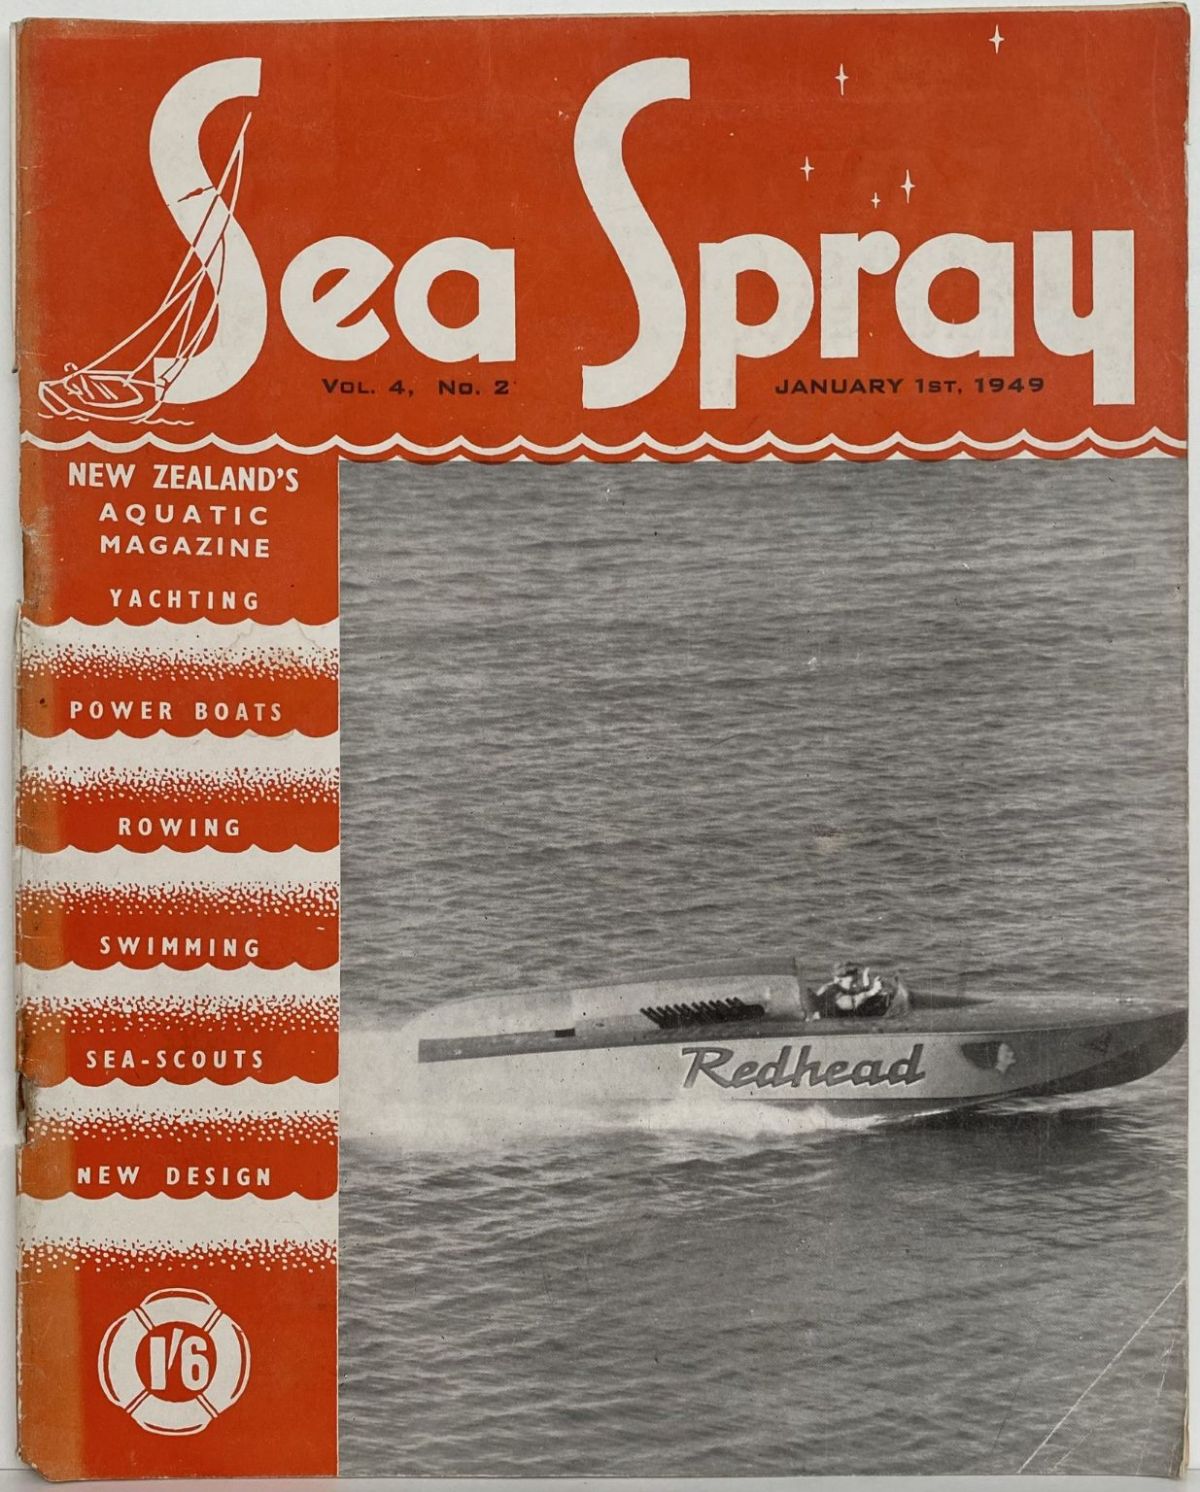 VINTAGE MAGAZINE: Sea Spray - Vol. 4, No. 2 - January 1949